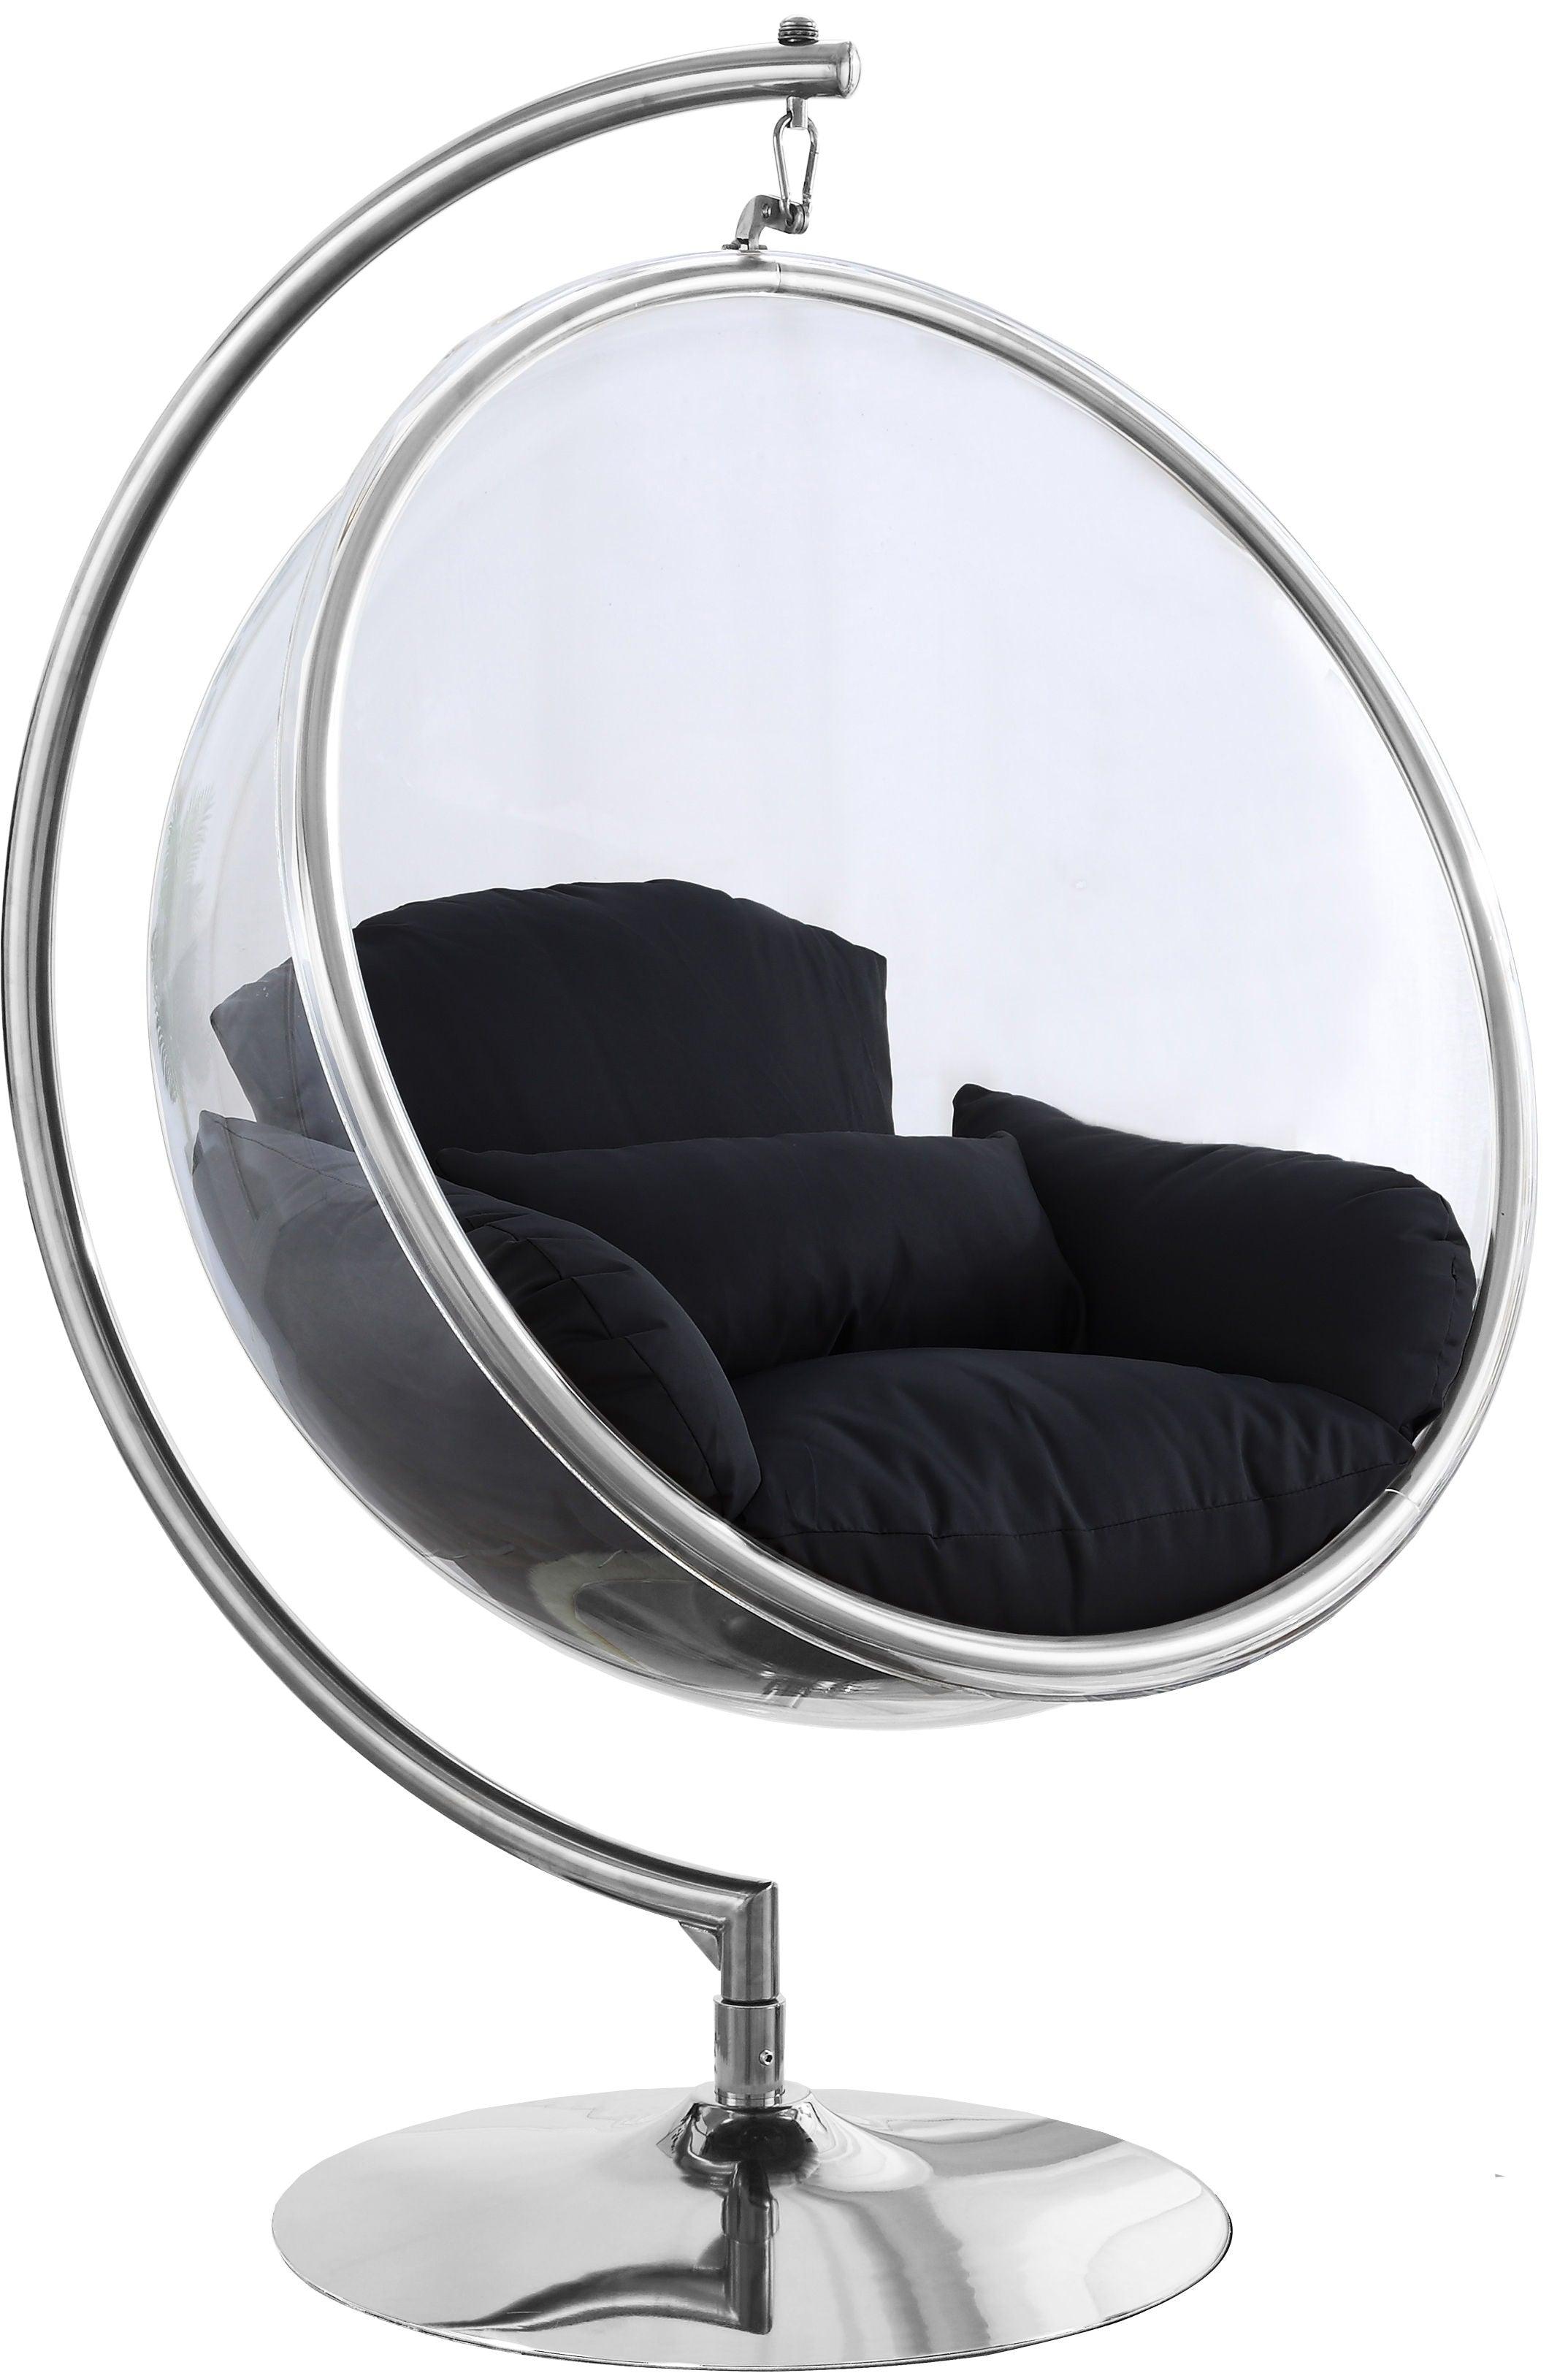 Meridian Furniture - Luna - Swing Chair - 5th Avenue Furniture